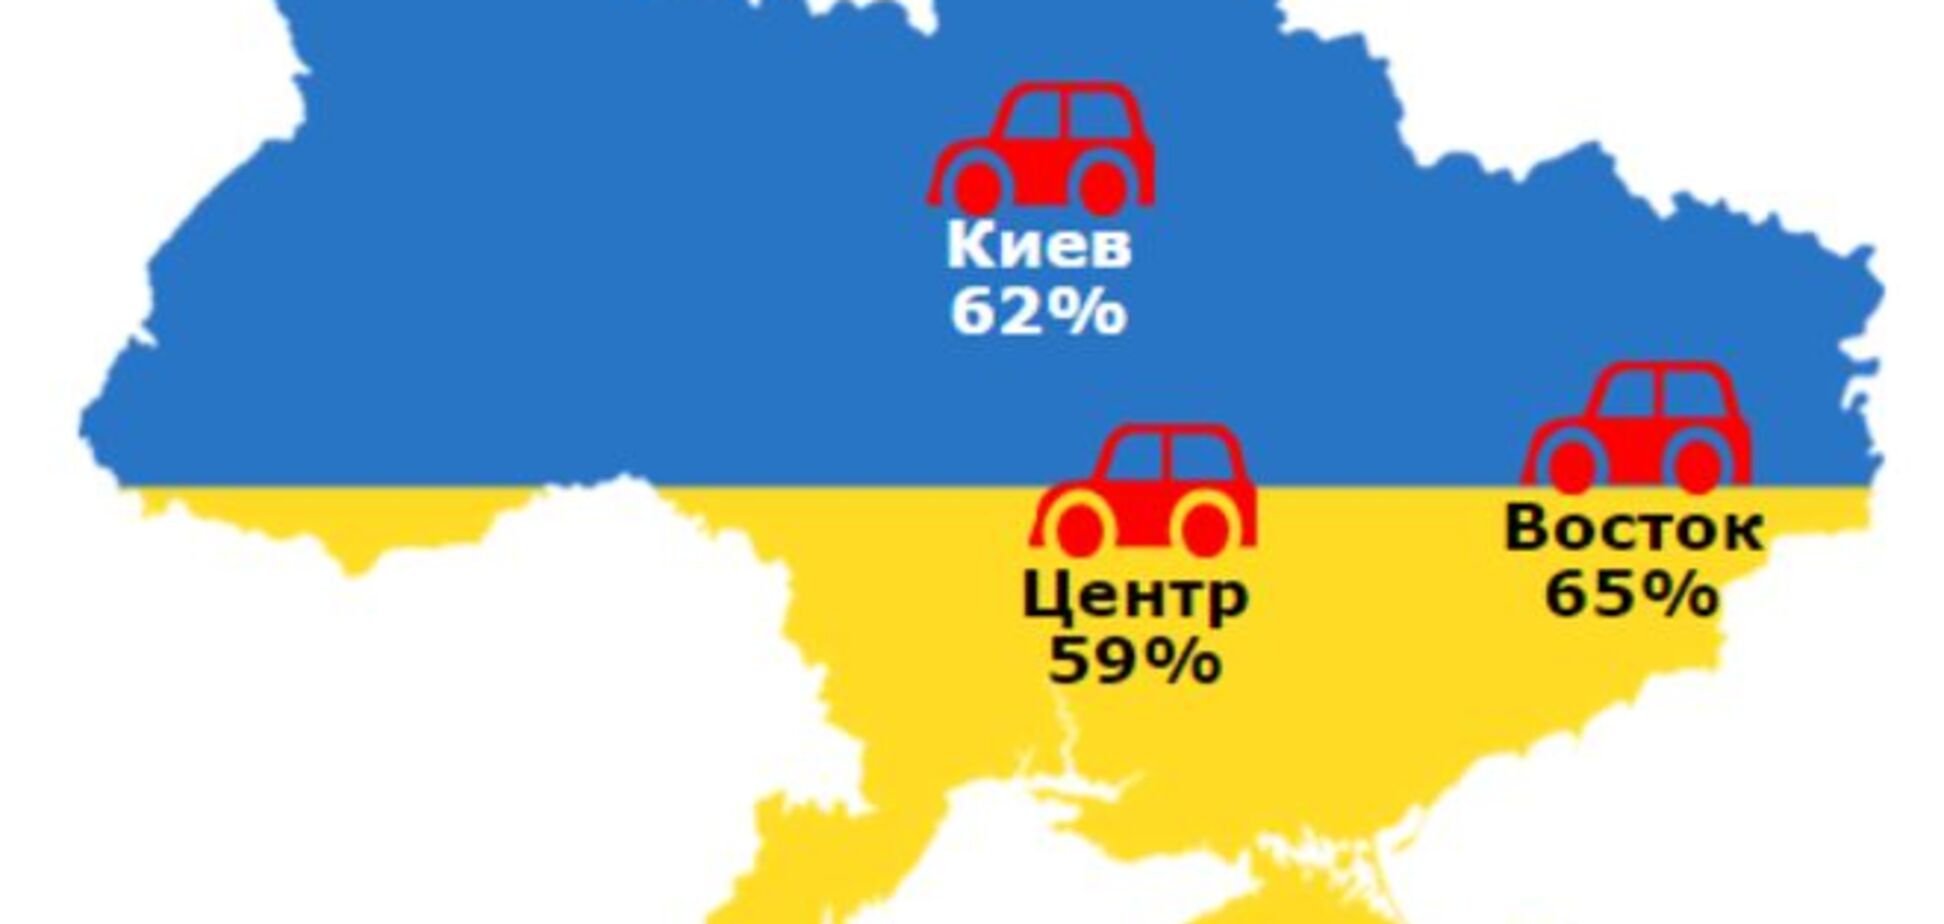 Скільки українців хочуть покинути країну: опублікована інфографіка